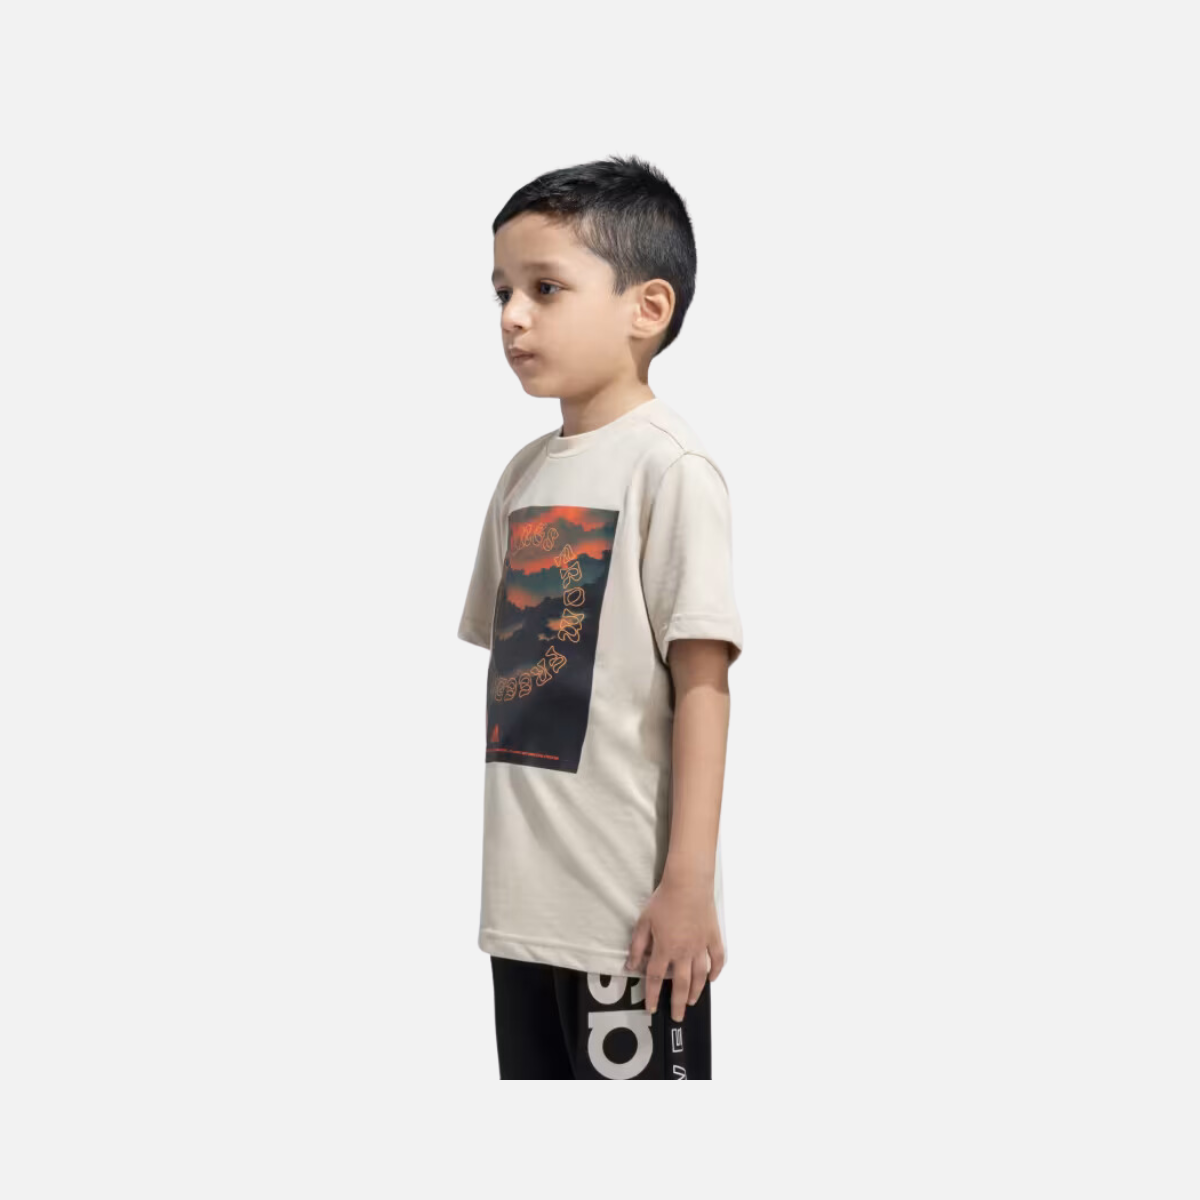 Adidas Kids Boy T-shirt (7-16 Years) -Wonder Beige